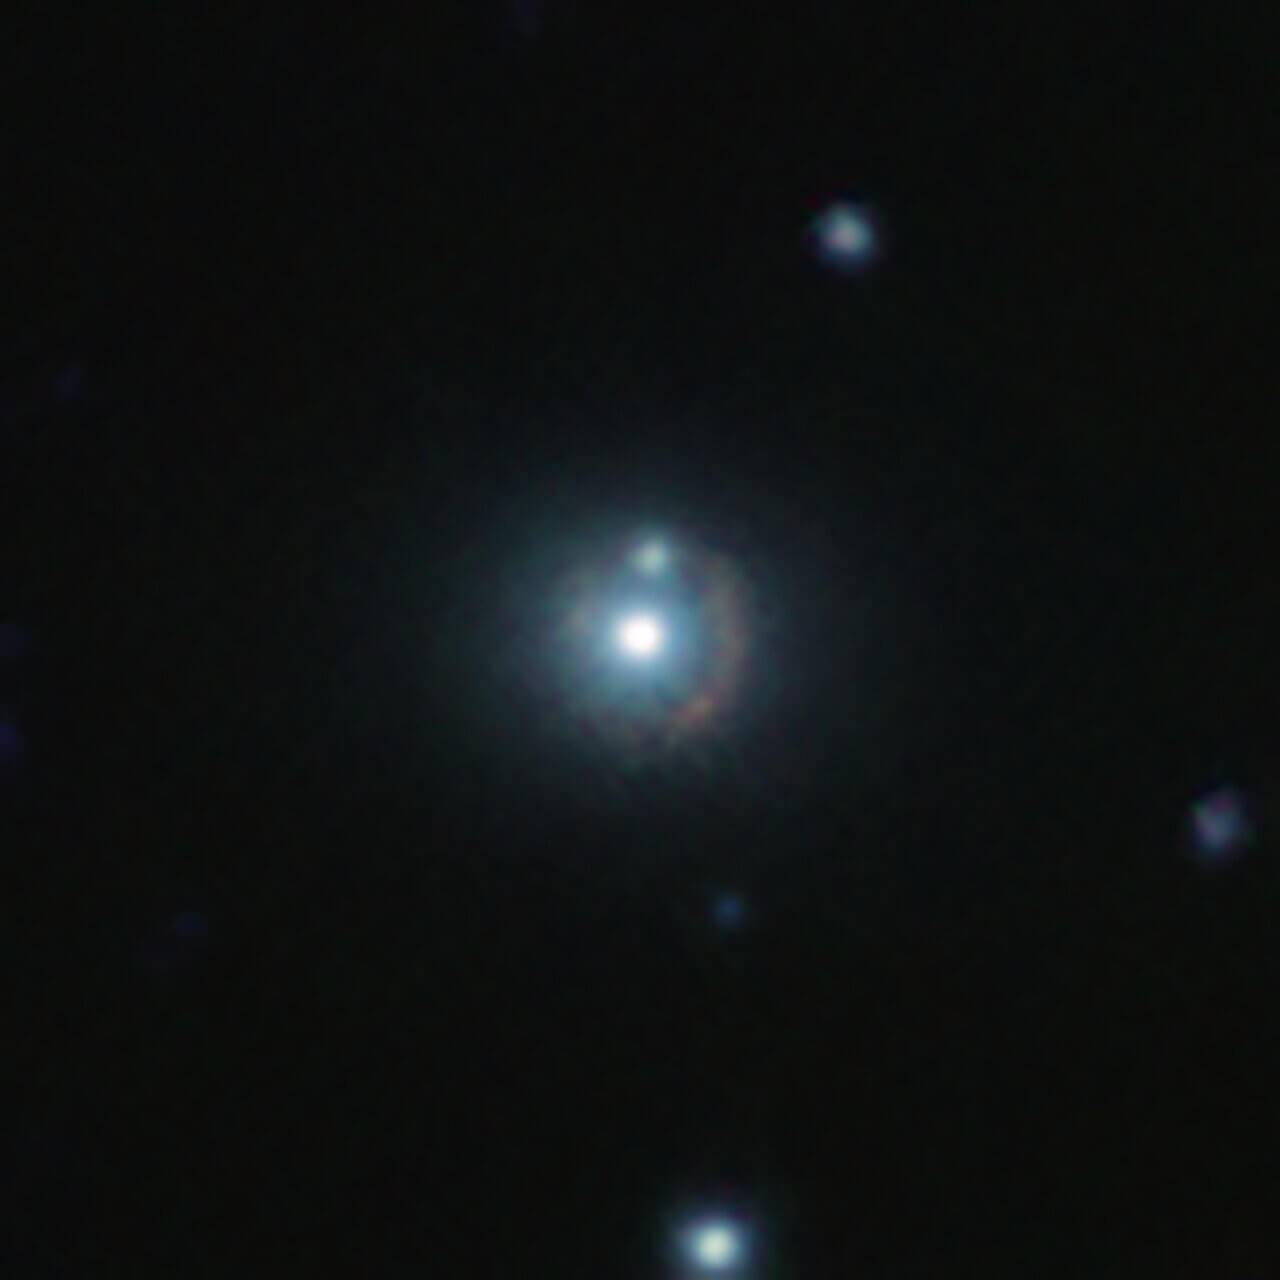 【▲ 図2: 9io9の赤外線画像。VISTA望遠鏡とカナダ・フランス・ハワイ望遠鏡の撮影画像を組み合わせたもの。中心部で光っているのは重力レンズ効果の重力源となっている別の銀河であり、その周りを囲む赤い孤が9io9の像である。 (Image Credit: ESO, J. Geach et al.) 】